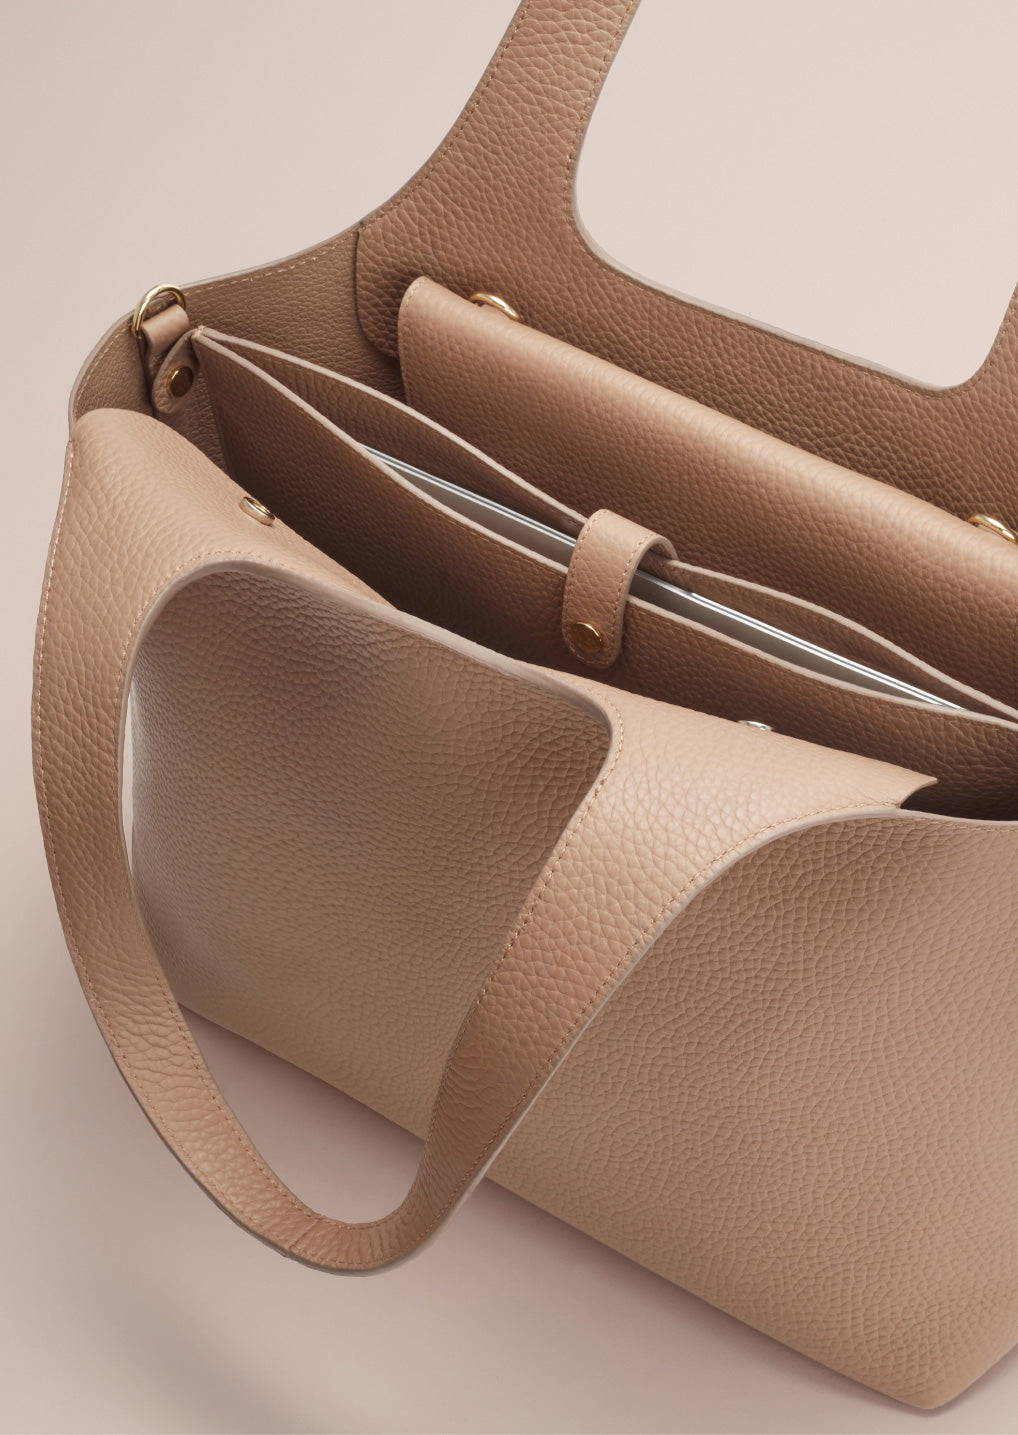 Handbag Laptop Bag Inner Bag, Size:16.1 inch(Pink)